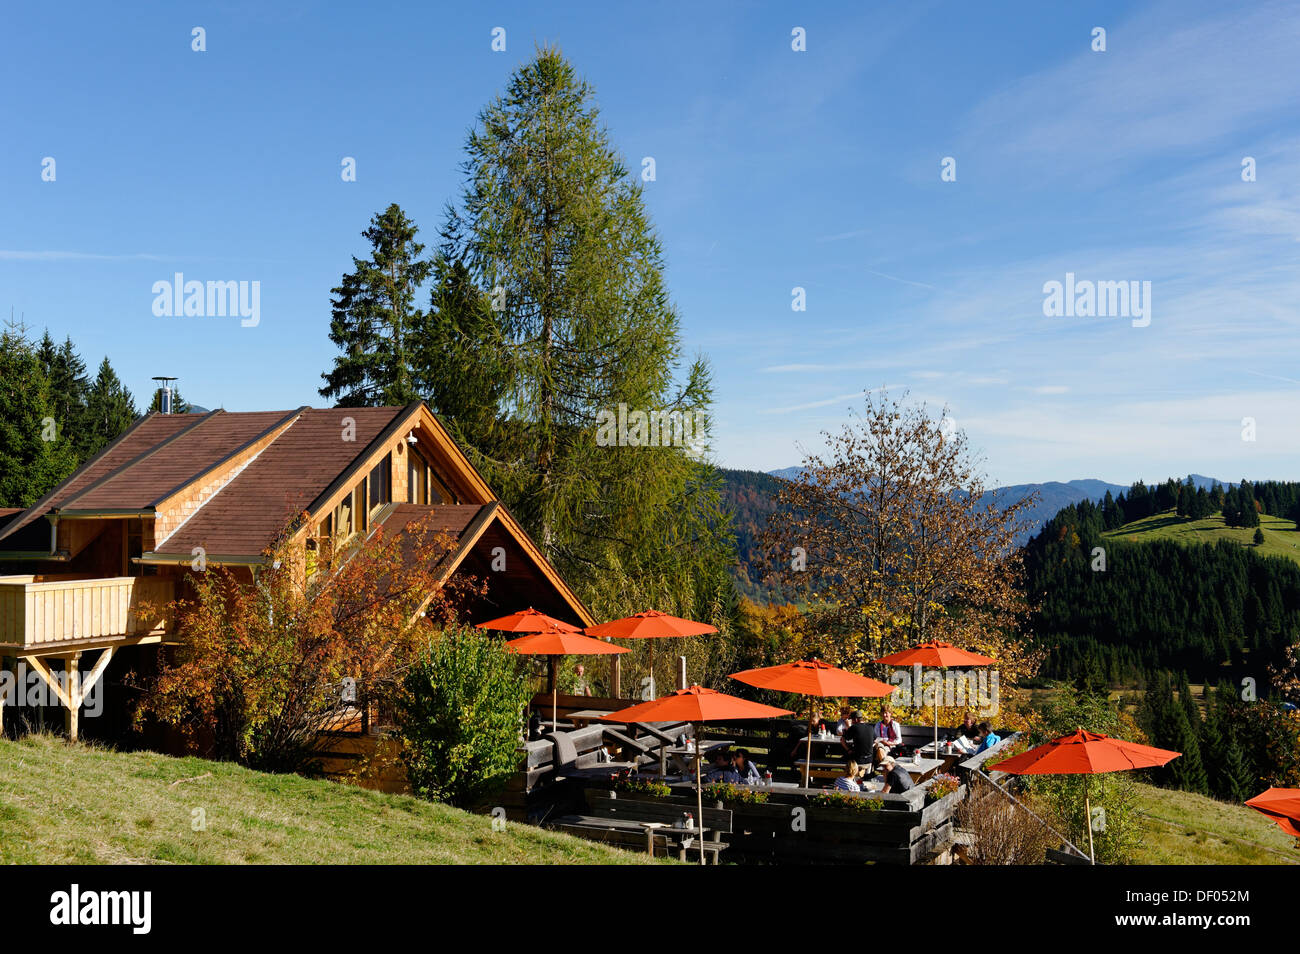 Elmauer Huette mountain inn, Elmauer Alm alp, near Mittenwald, Werdenfelser Land region, Upper Bavaria, Bavaria Stock Photo